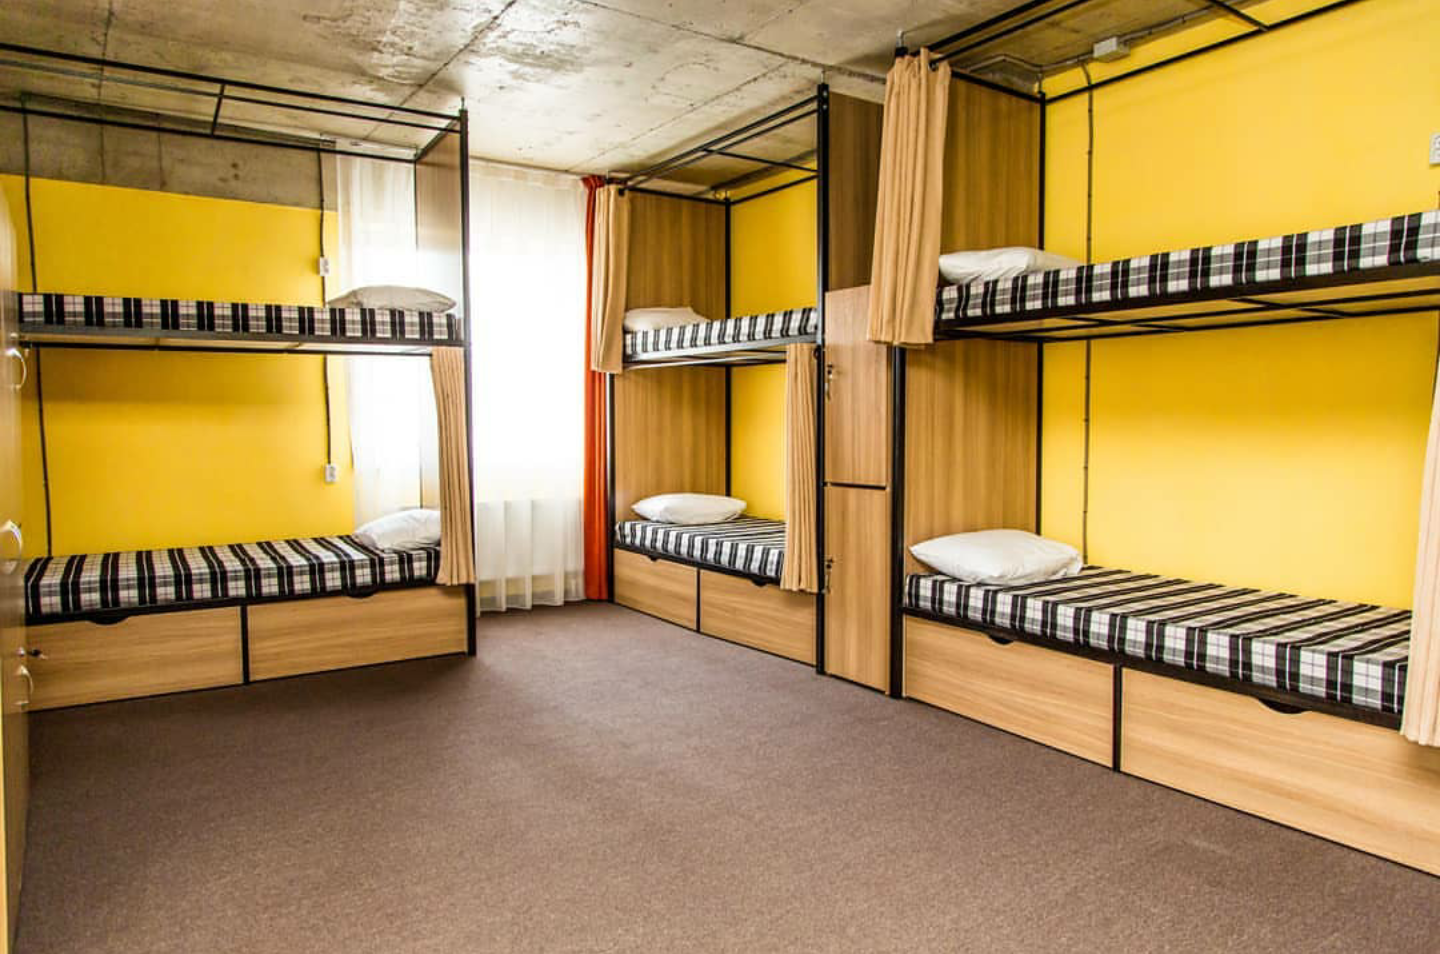 Оборудование общежития. Хостел Саларьево. Двухъярусная кровать для хостела. Двухъярусные кровати для хостелов. Хостел комната.